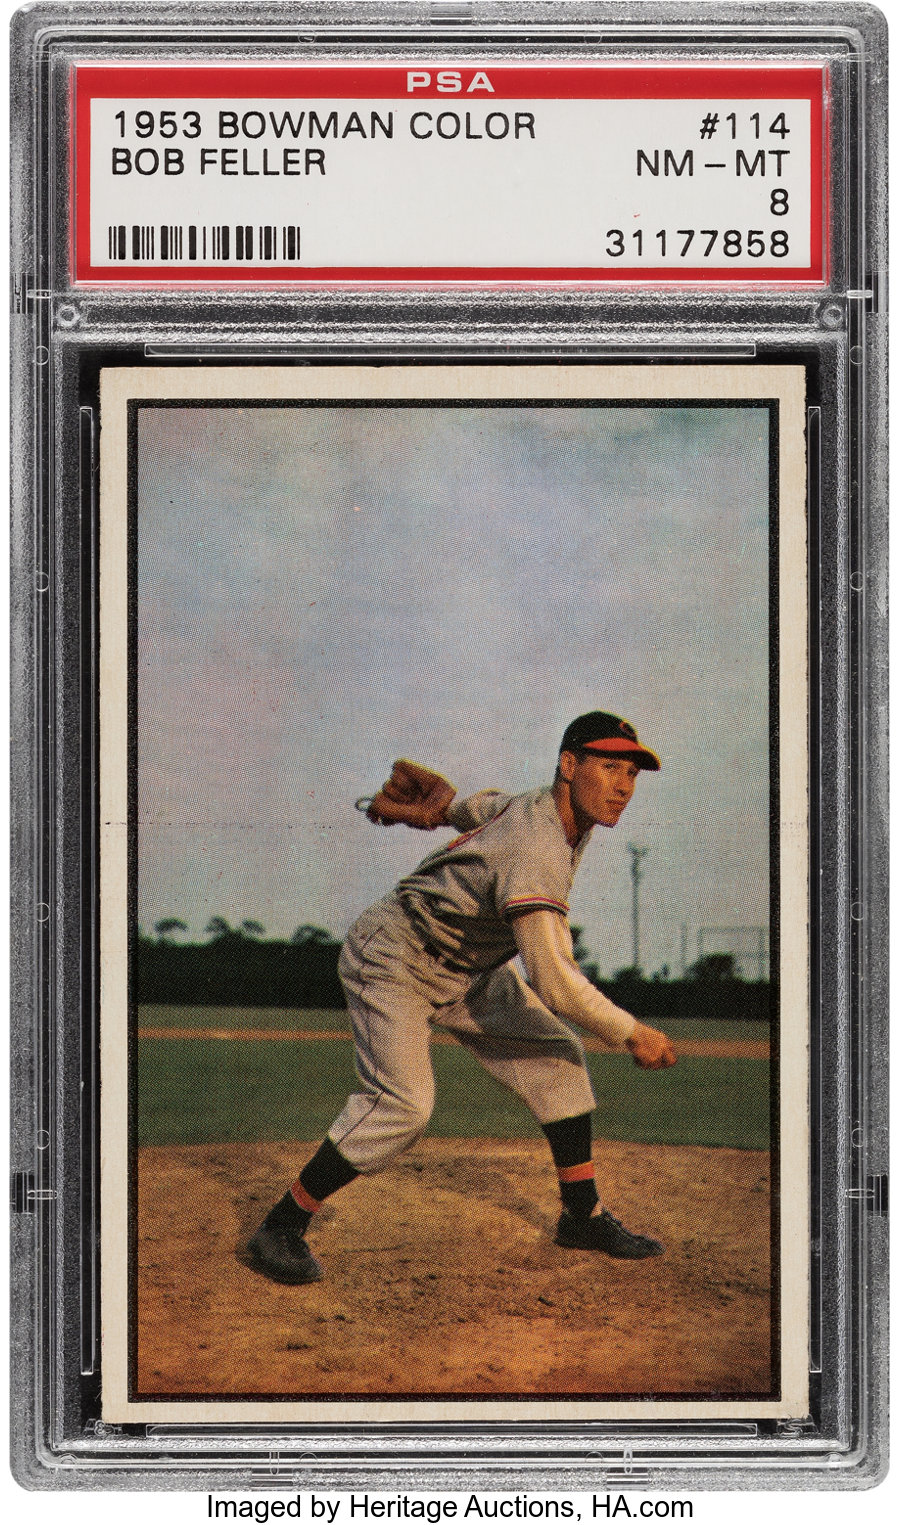 1953 Bowman Color Bob Feller #114 PSA NM-MT 8